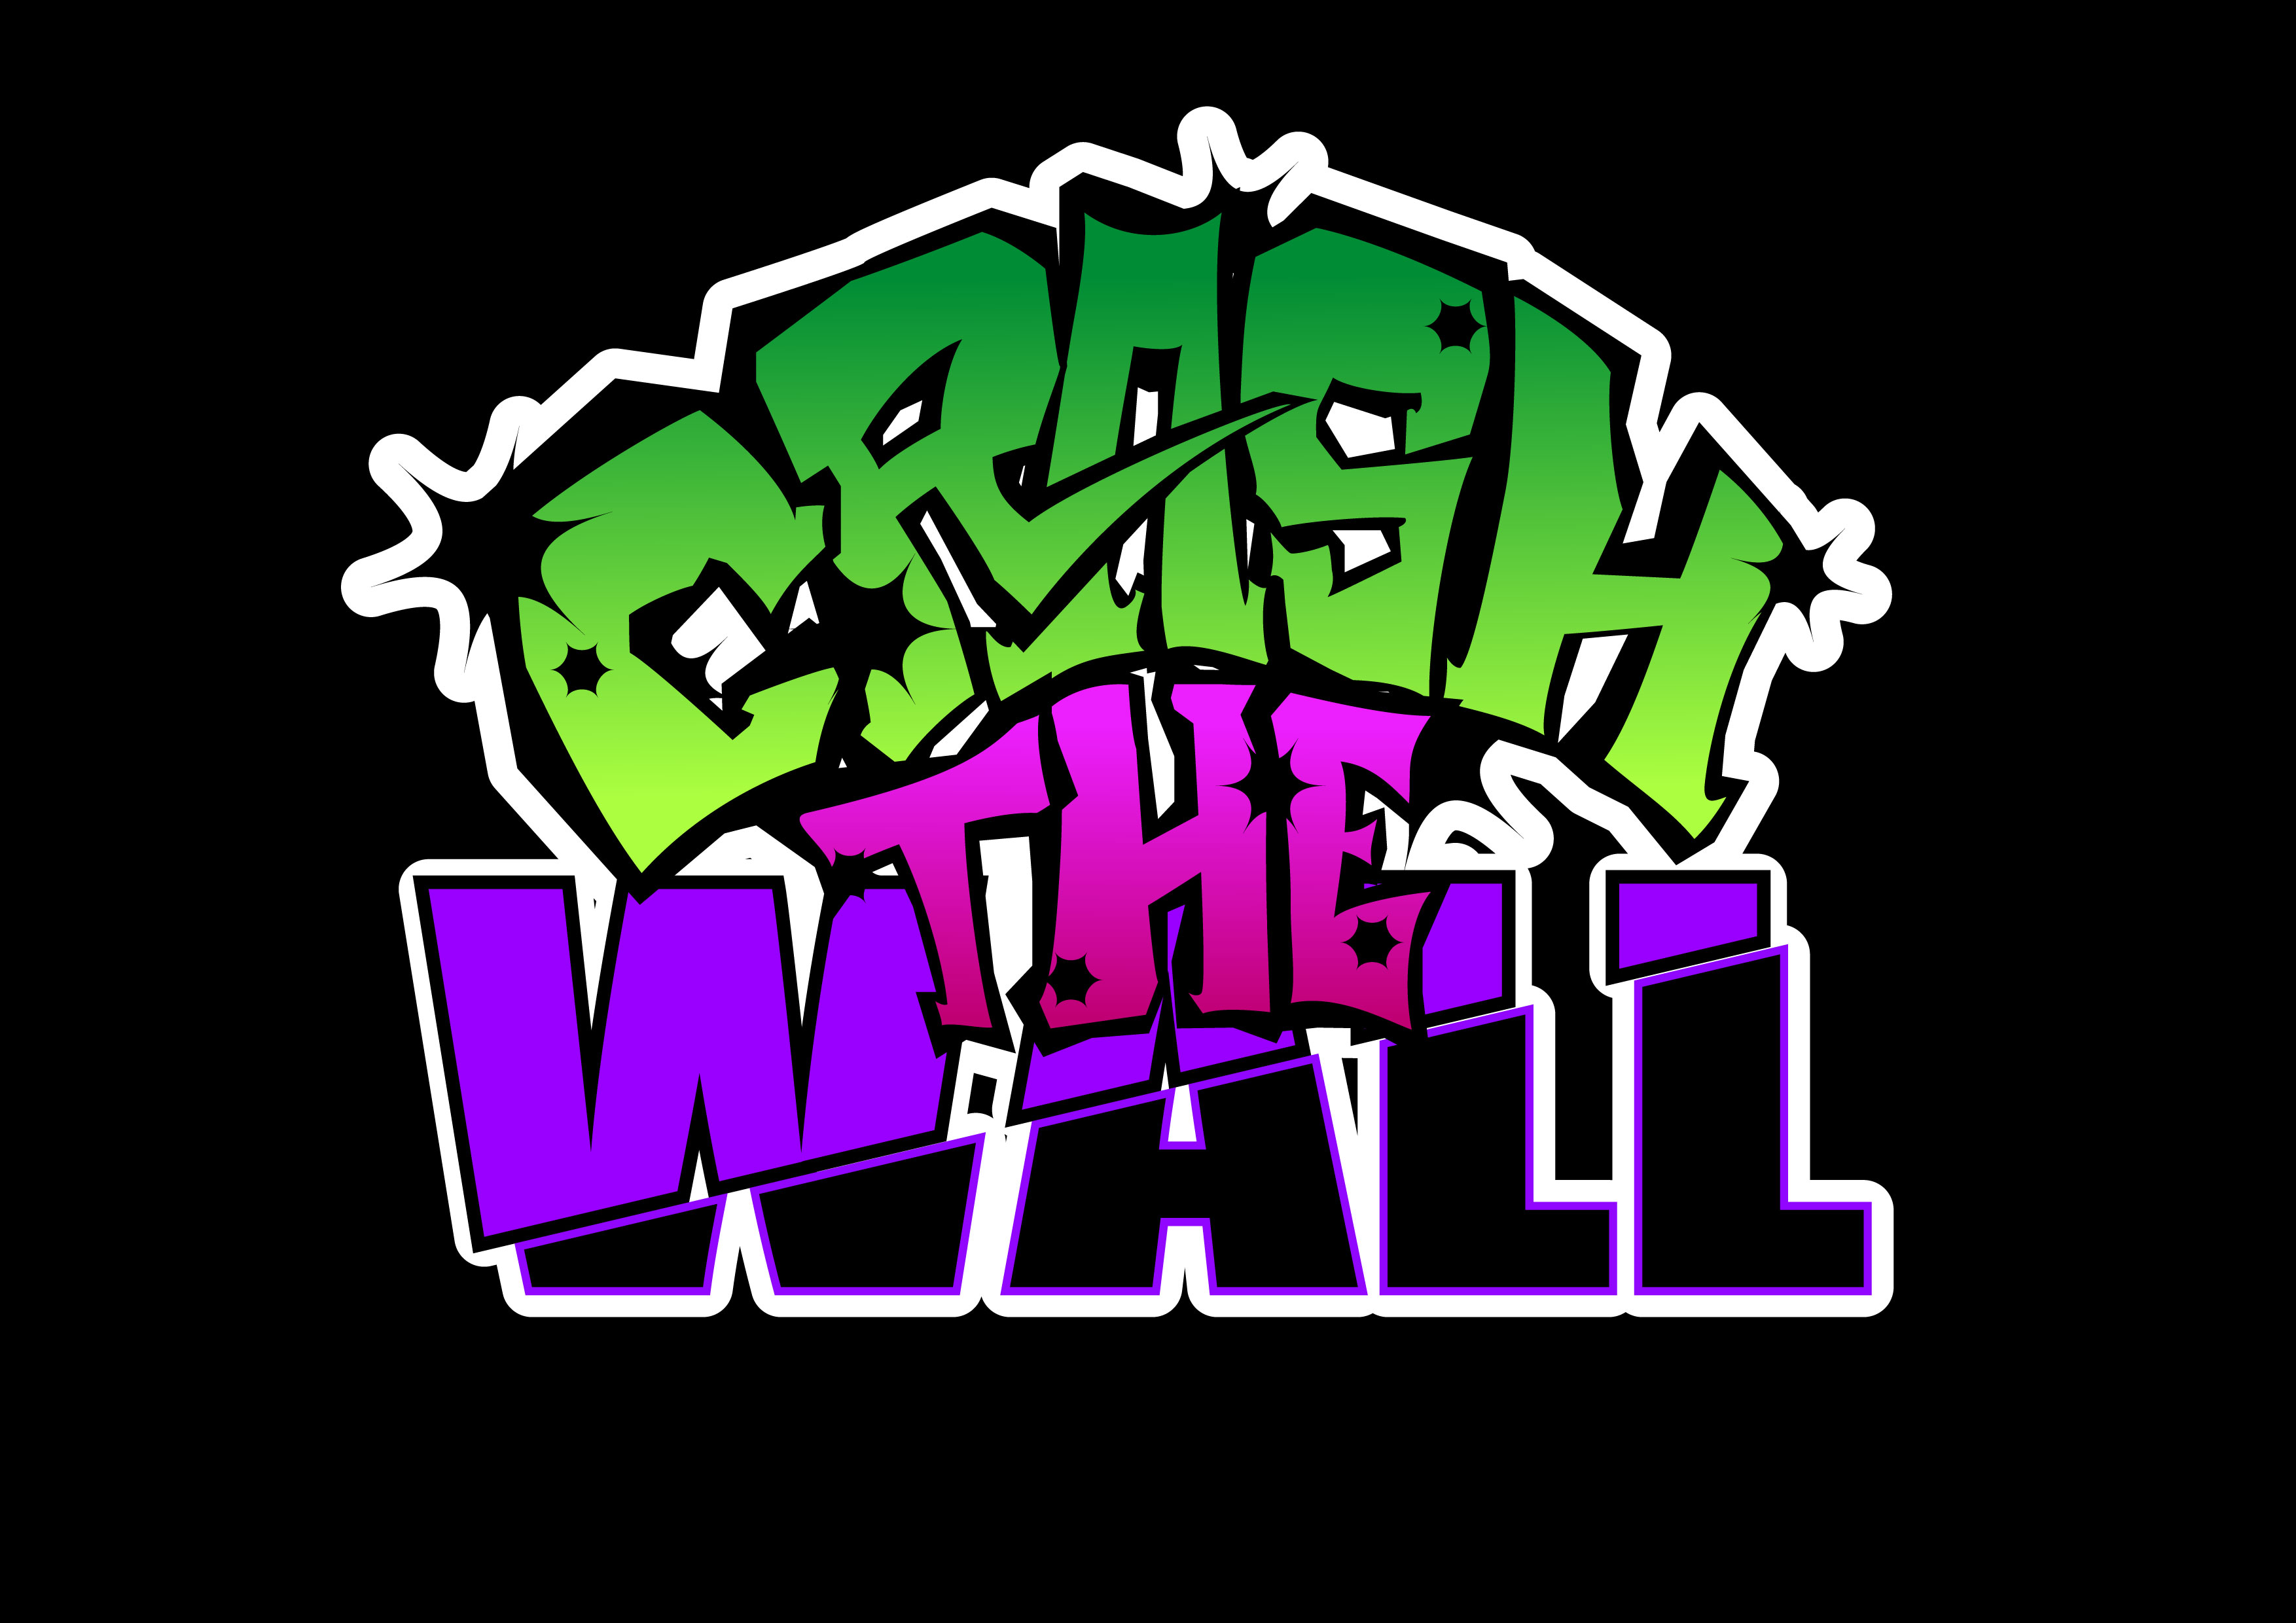 CRASH THE WALL vol.2